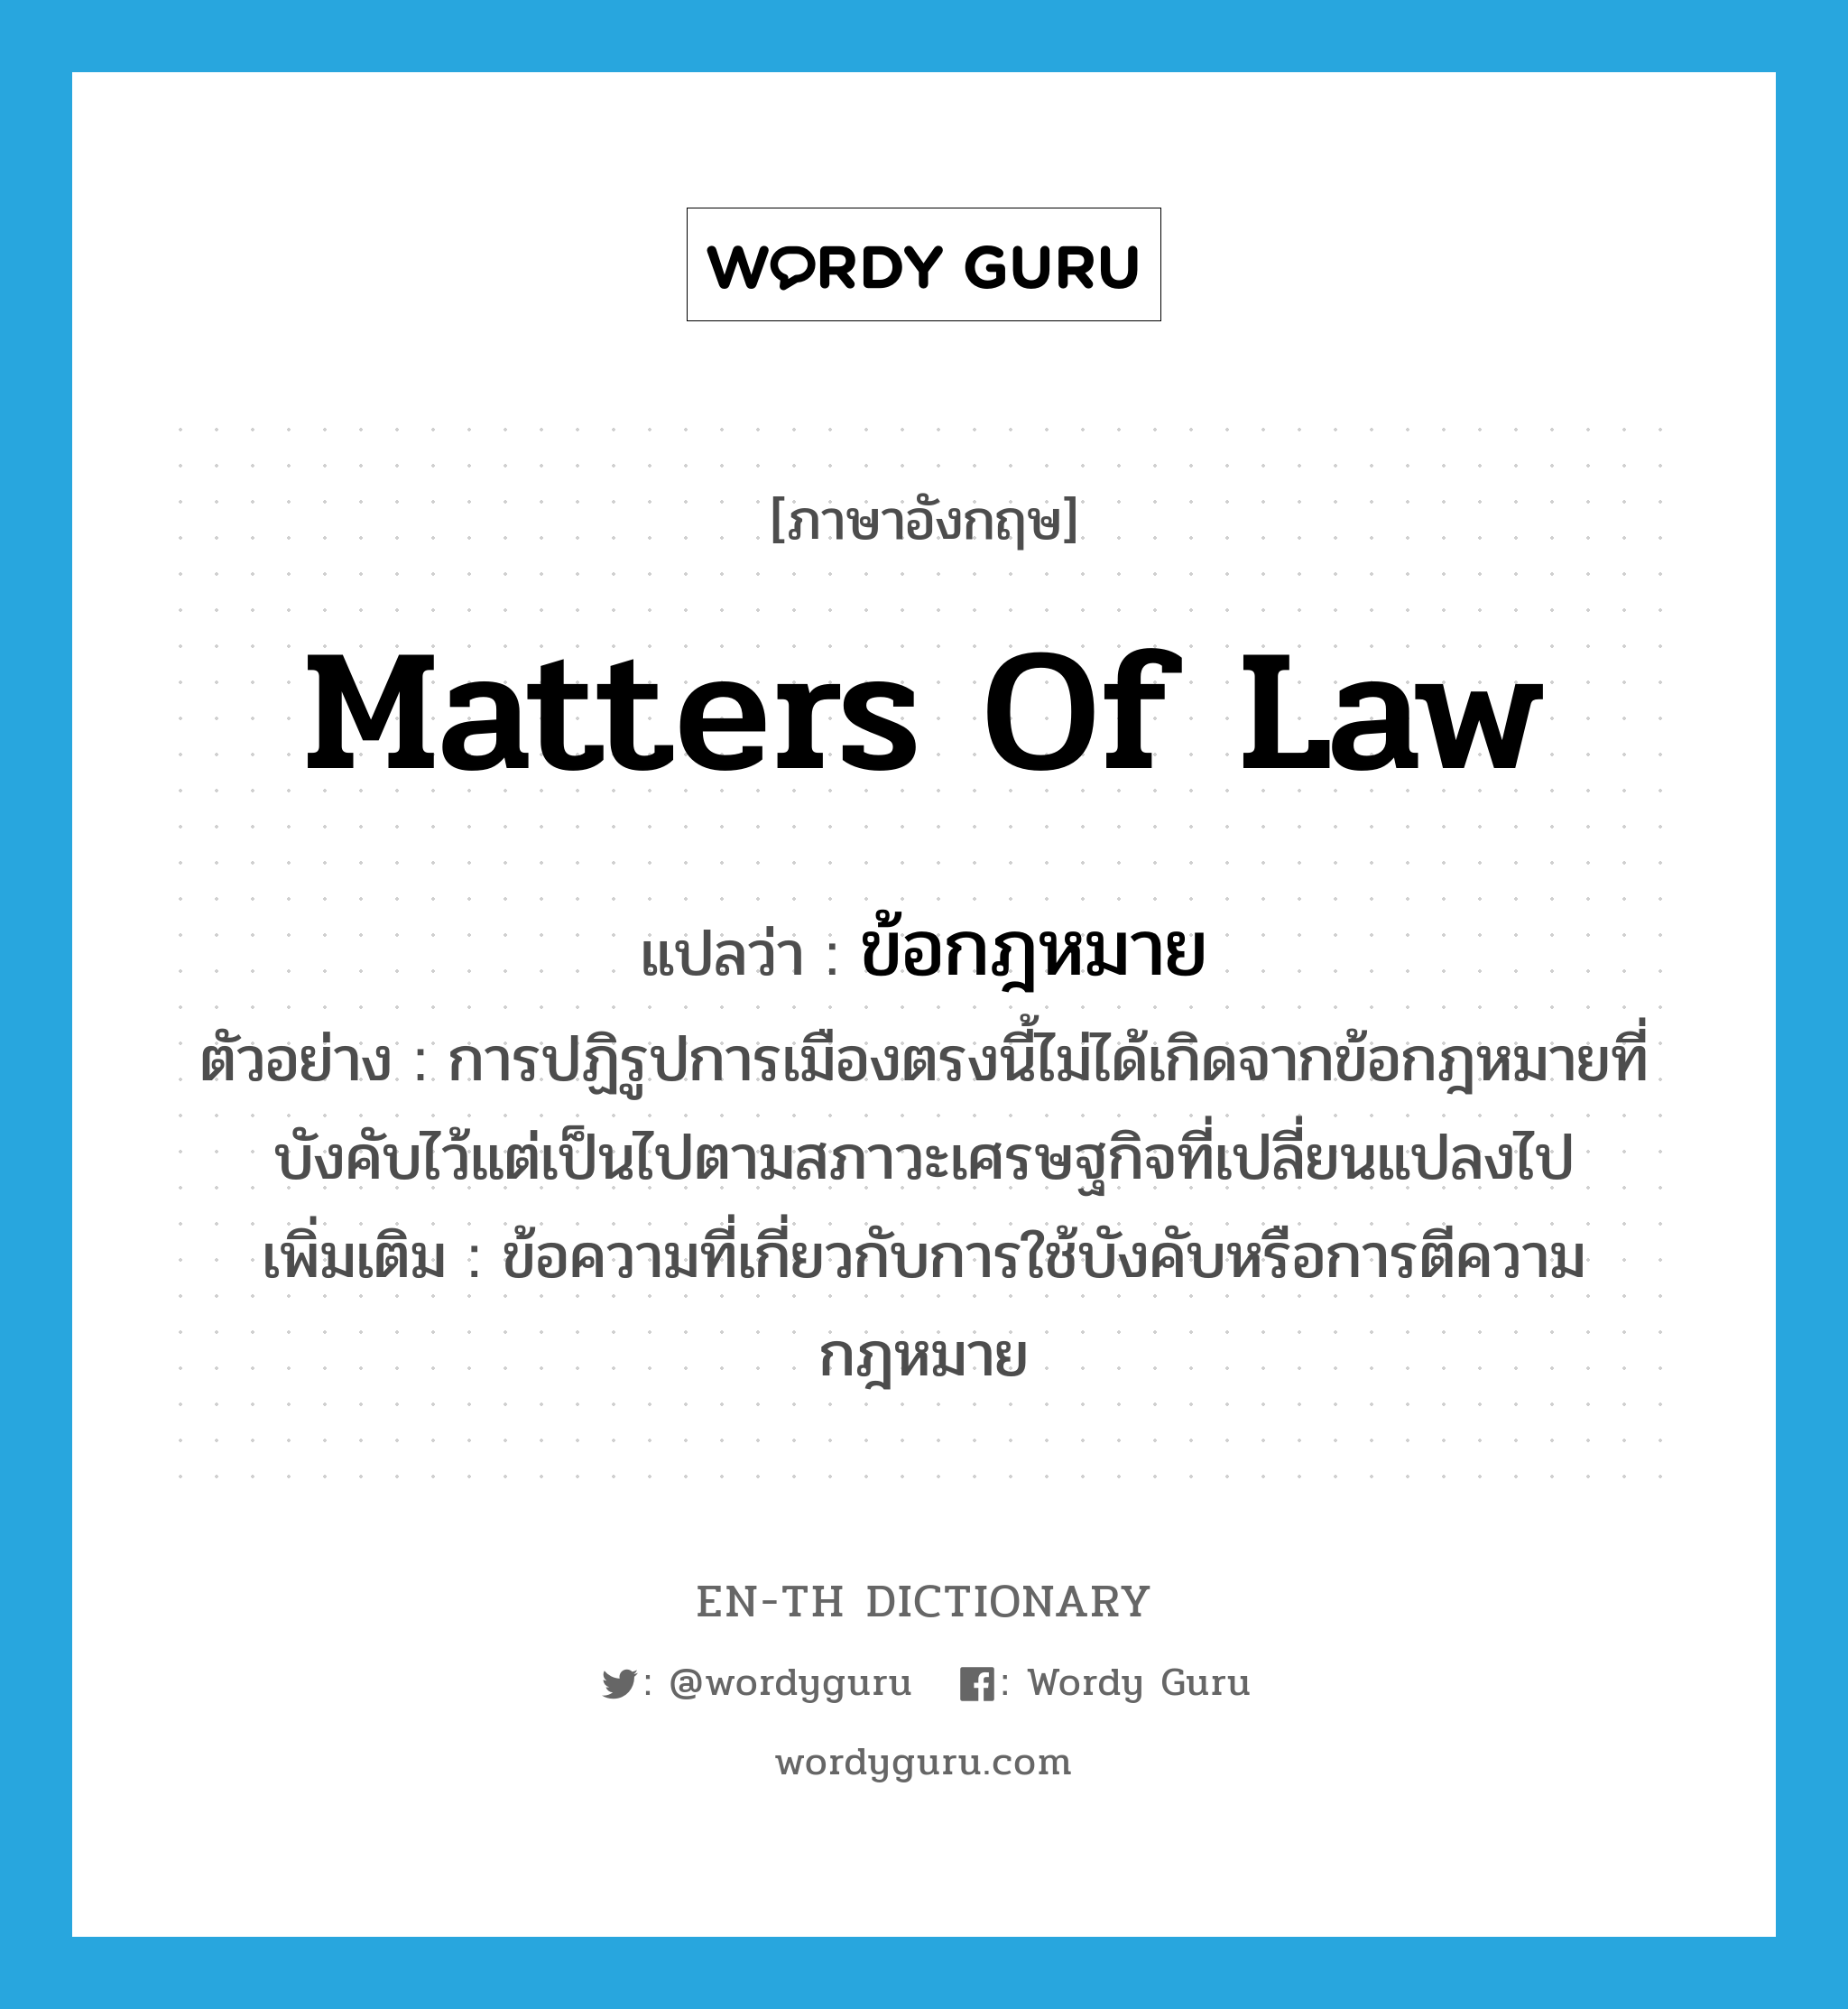 matters of law แปลว่า?, คำศัพท์ภาษาอังกฤษ matters of law แปลว่า ข้อกฎหมาย ประเภท N ตัวอย่าง การปฏิรูปการเมืองตรงนี้ไม่ได้เกิดจากข้อกฎหมายที่บังคับไว้แต่เป็นไปตามสภาวะเศรษฐกิจที่เปลี่ยนแปลงไป เพิ่มเติม ข้อความที่เกี่ยวกับการใช้บังคับหรือการตีความกฎหมาย หมวด N